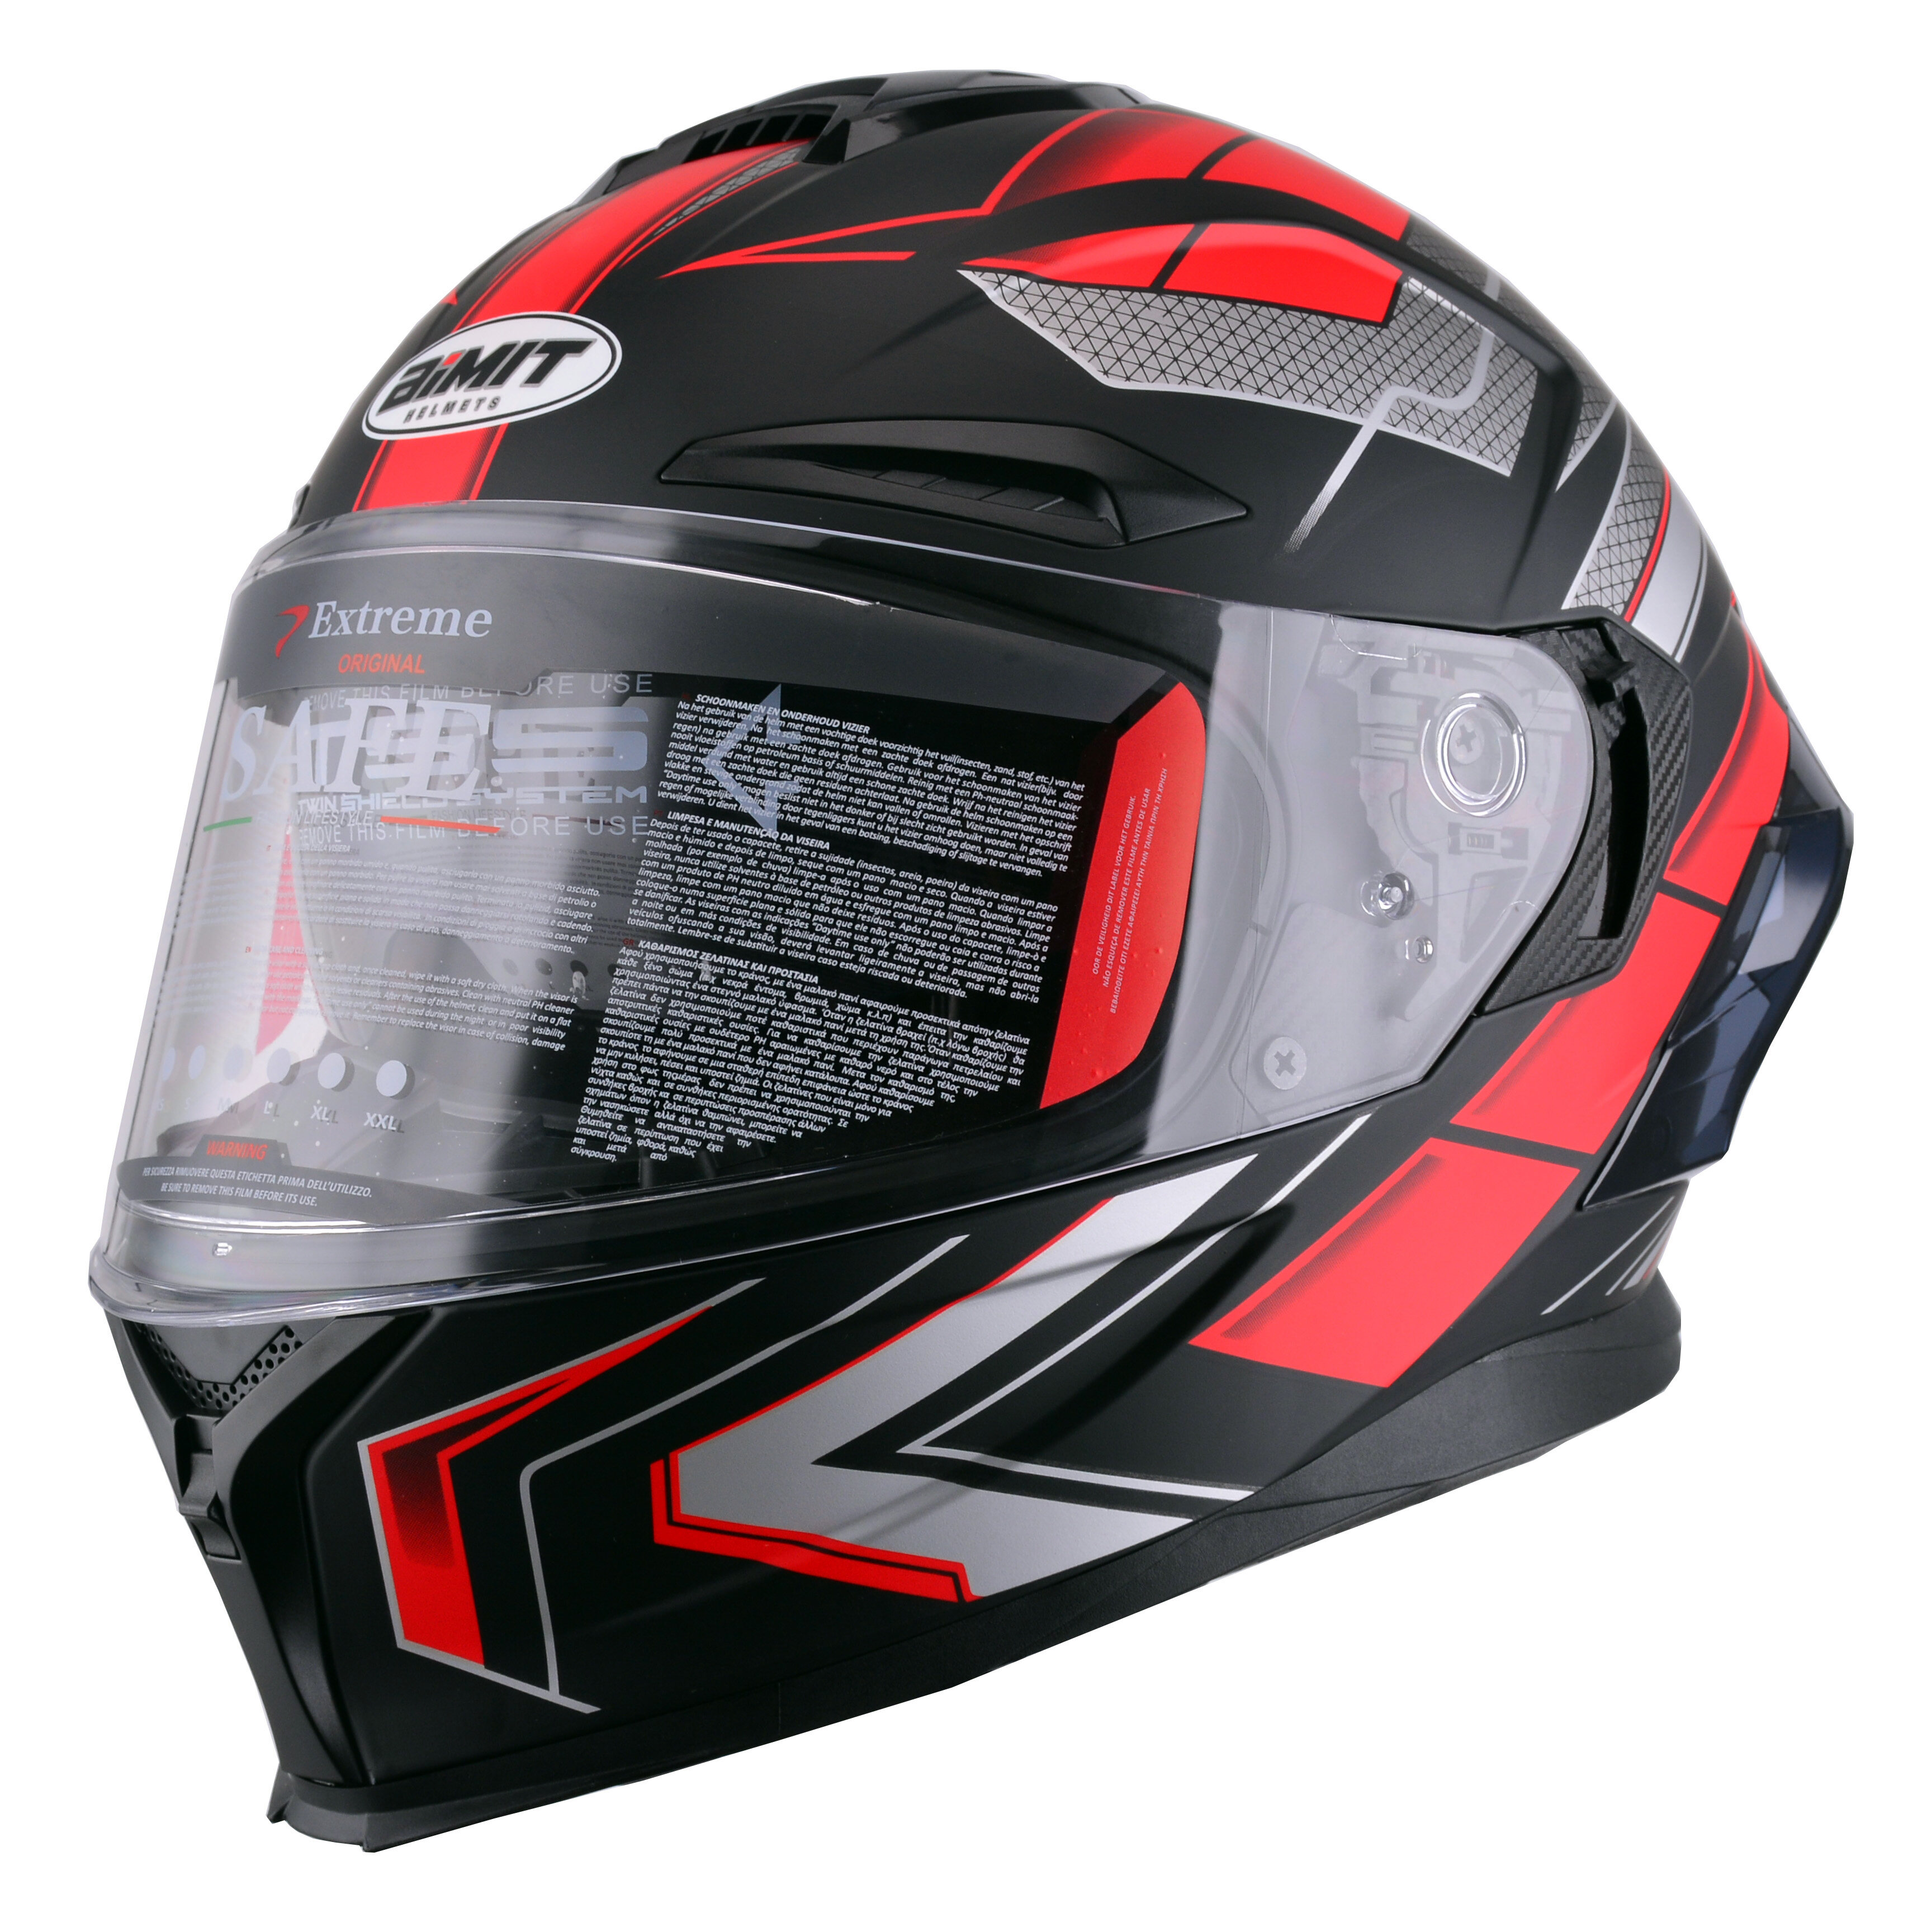 ABS Helmet Motorcycle Full Face Motorbike Helmet